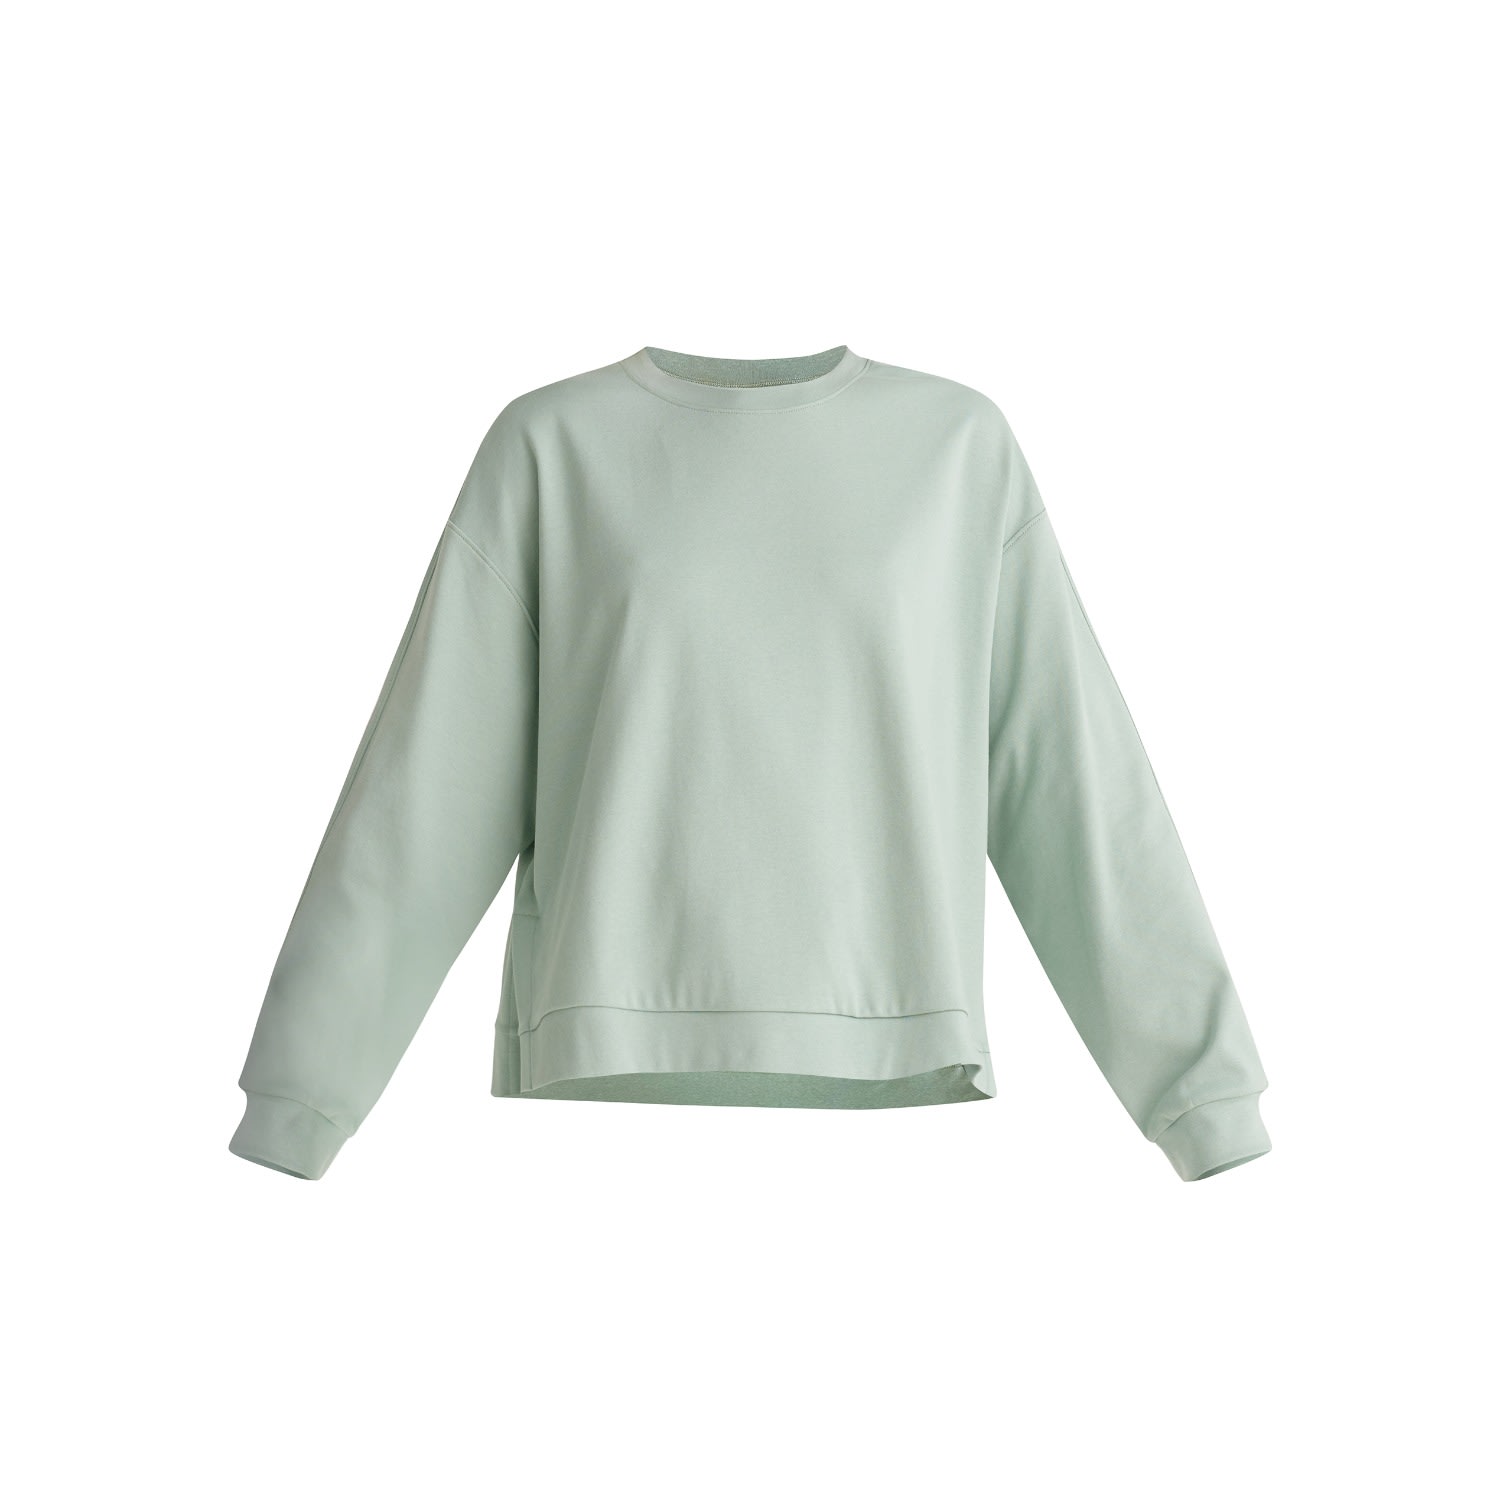 PAISIEPAISIE - Crew neck sweatshirt In Light Green | DailyMail